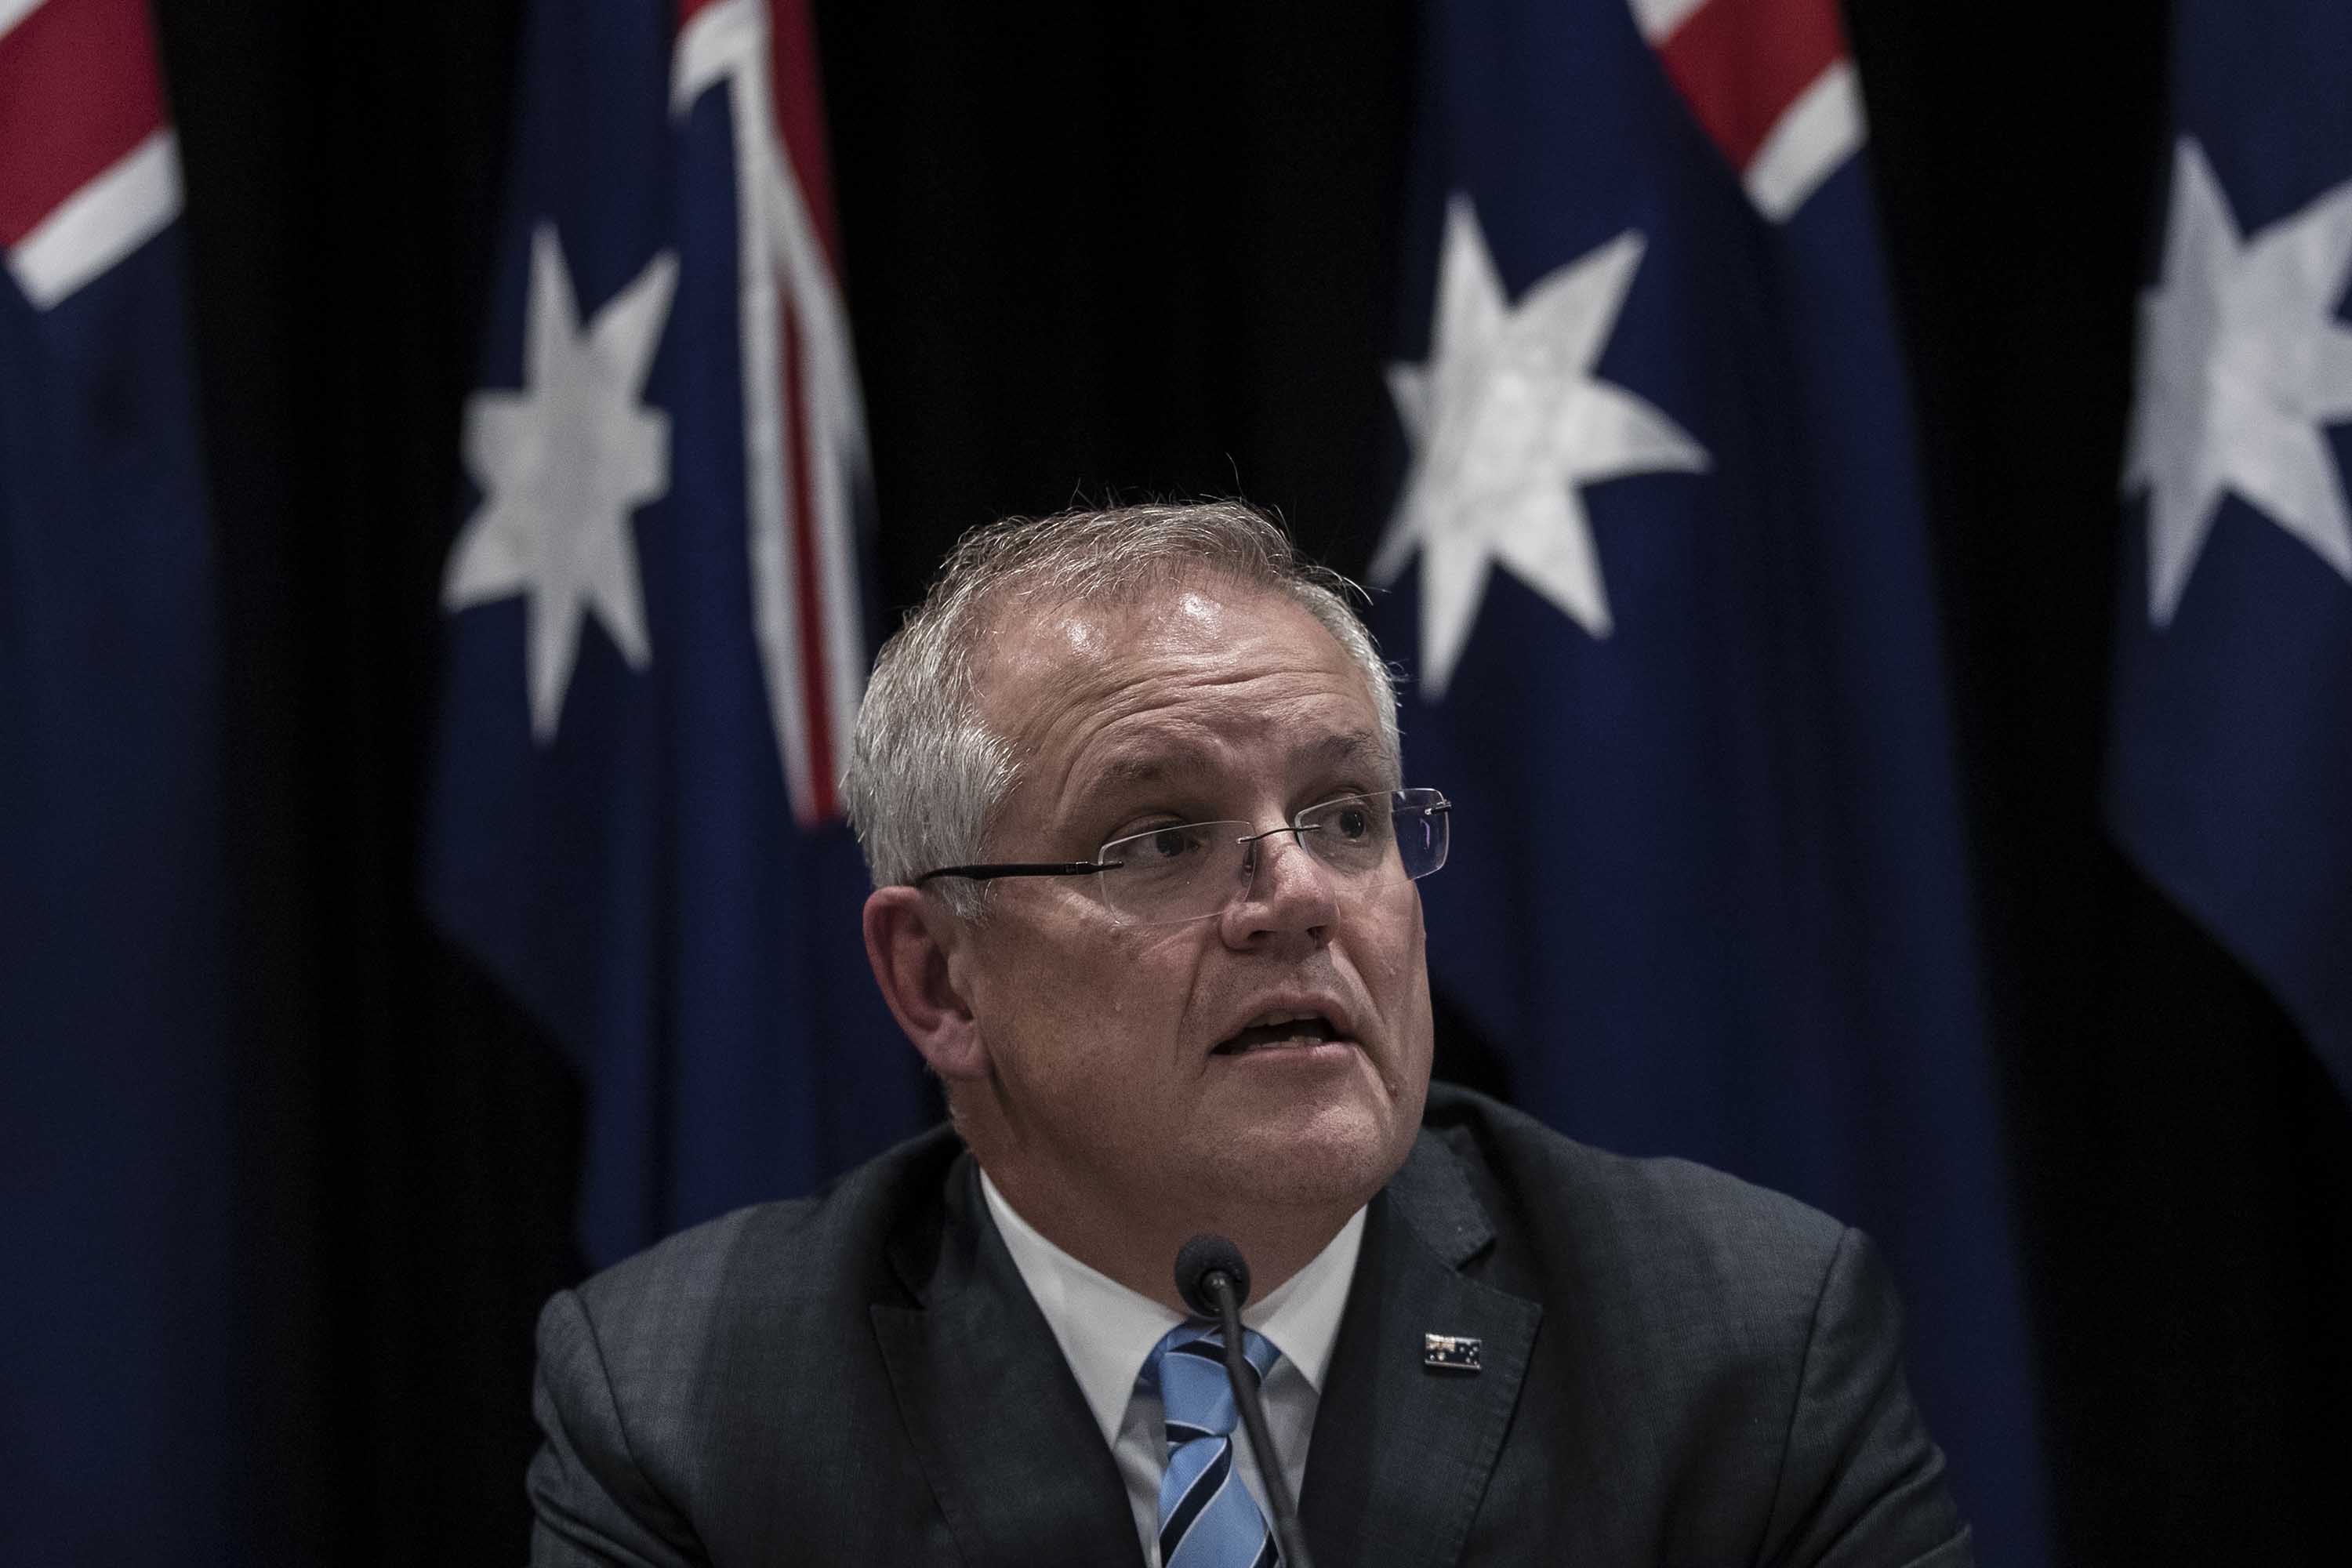 Australian Prime Minister Scott Morrison speaks during a press conference on Friday in Sydney, Australia.